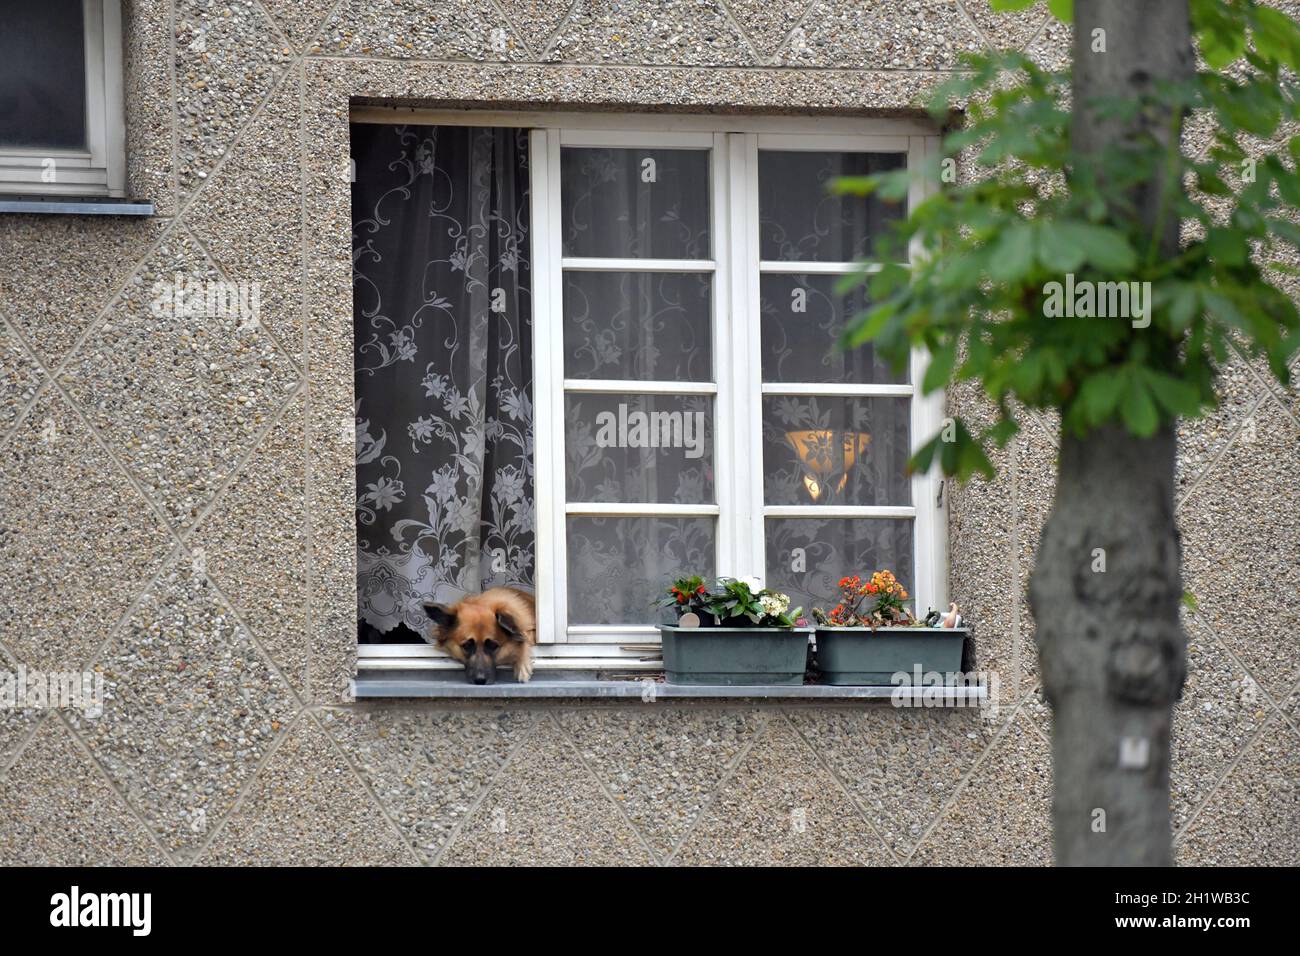 Ein Hund schaut aus einem Wohnungsfenster in Wien, Österreich, Europa - A  dog looks out of an apartment window in Vienna, Austria, Europe Stock Photo  - Alamy